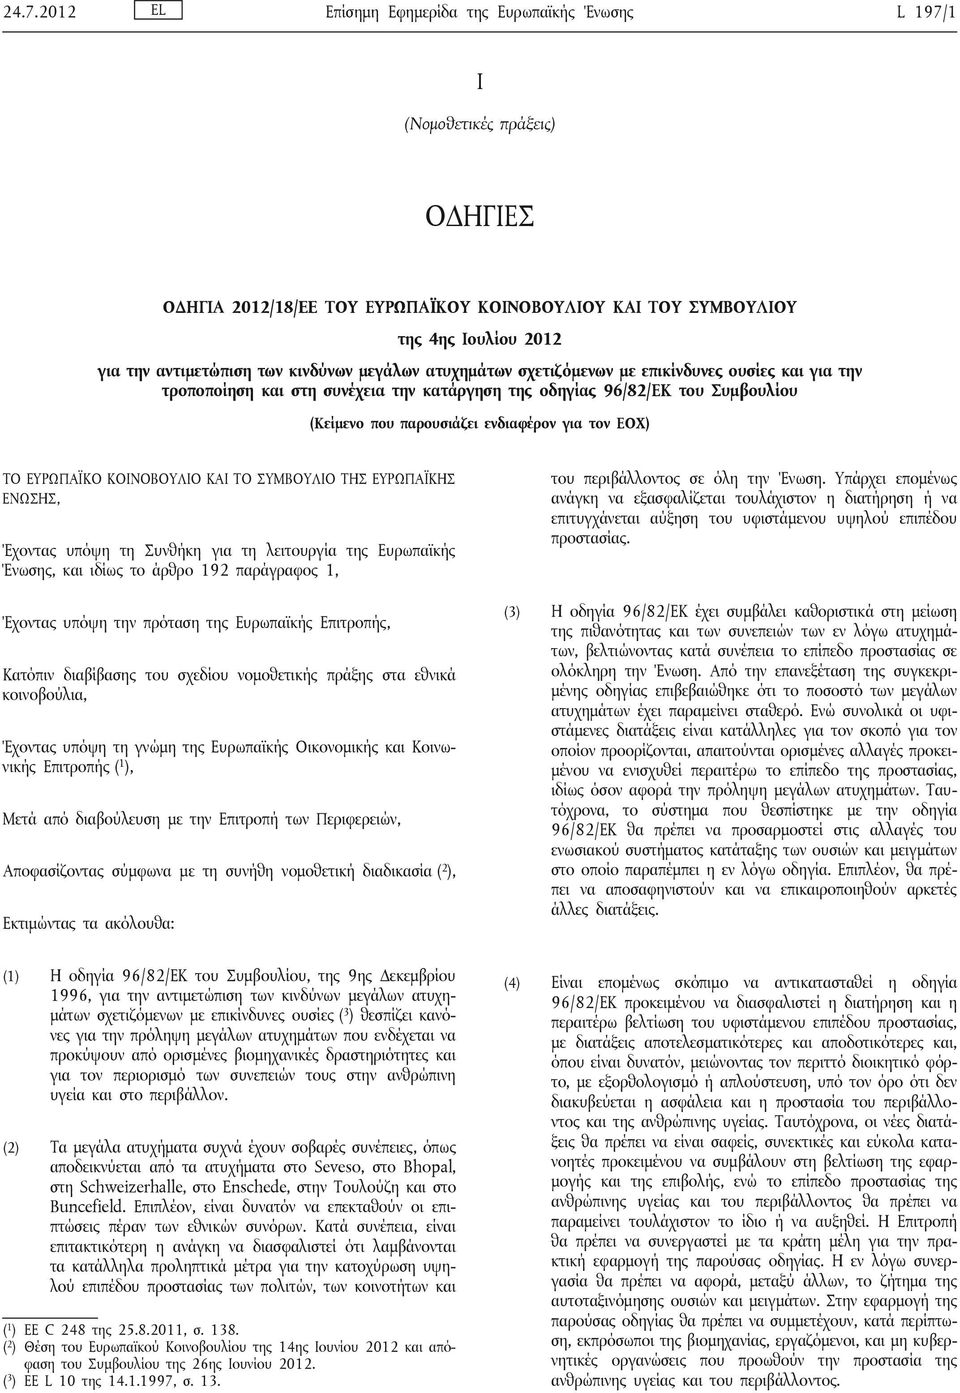 τον ΕΟΧ) ΤΟ ΕΥΡΩΠΑΪΚΟ ΚΟΙΝΟΒΟΥΛΙΟ ΚΑΙ ΤΟ ΣΥΜΒΟΥΛΙΟ ΤΗΣ ΕΥΡΩΠΑΪΚΗΣ ΕΝΩΣΗΣ, Έχοντας υπόψη τη Συνθήκη για τη λειτουργία της Ευρωπαϊκής Ένωσης, και ιδίως το άρθρο 192 παράγραφος 1, Έχοντας υπόψη την